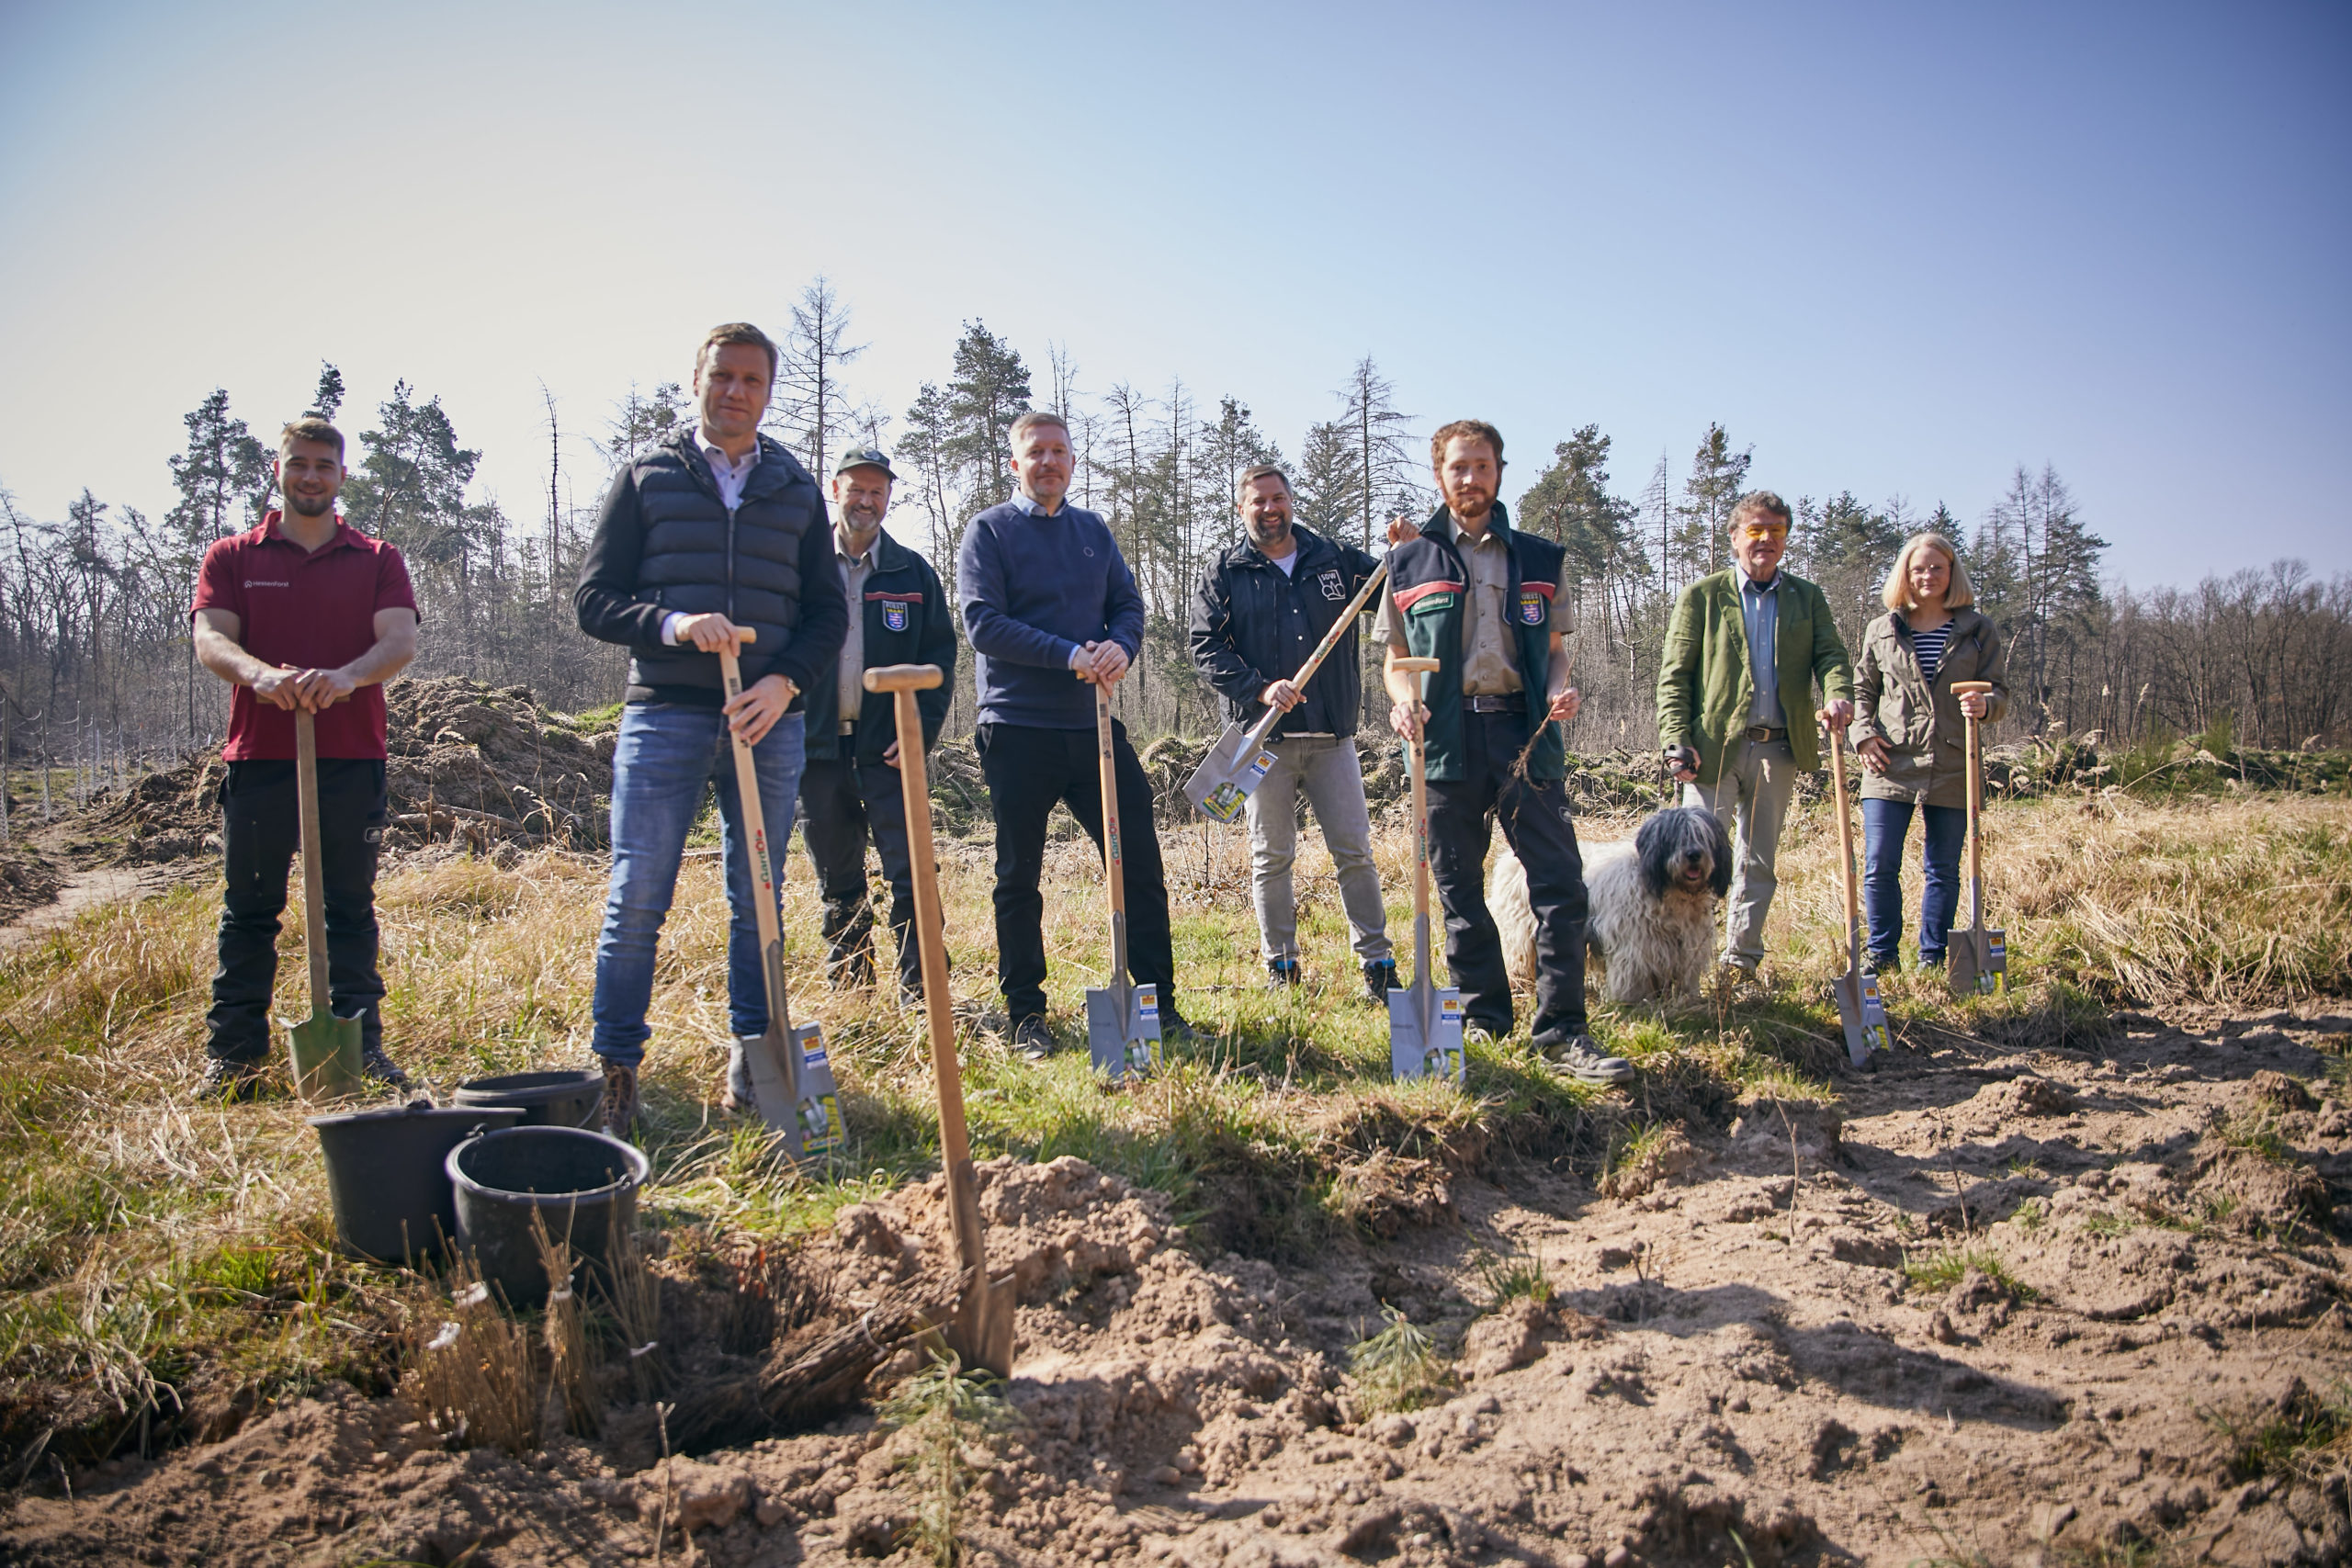 BAUHAUS und DFB engagieren sich für den Klimawald 300 junge Bäume im Rhein-Main-Gebiet gepflanzt